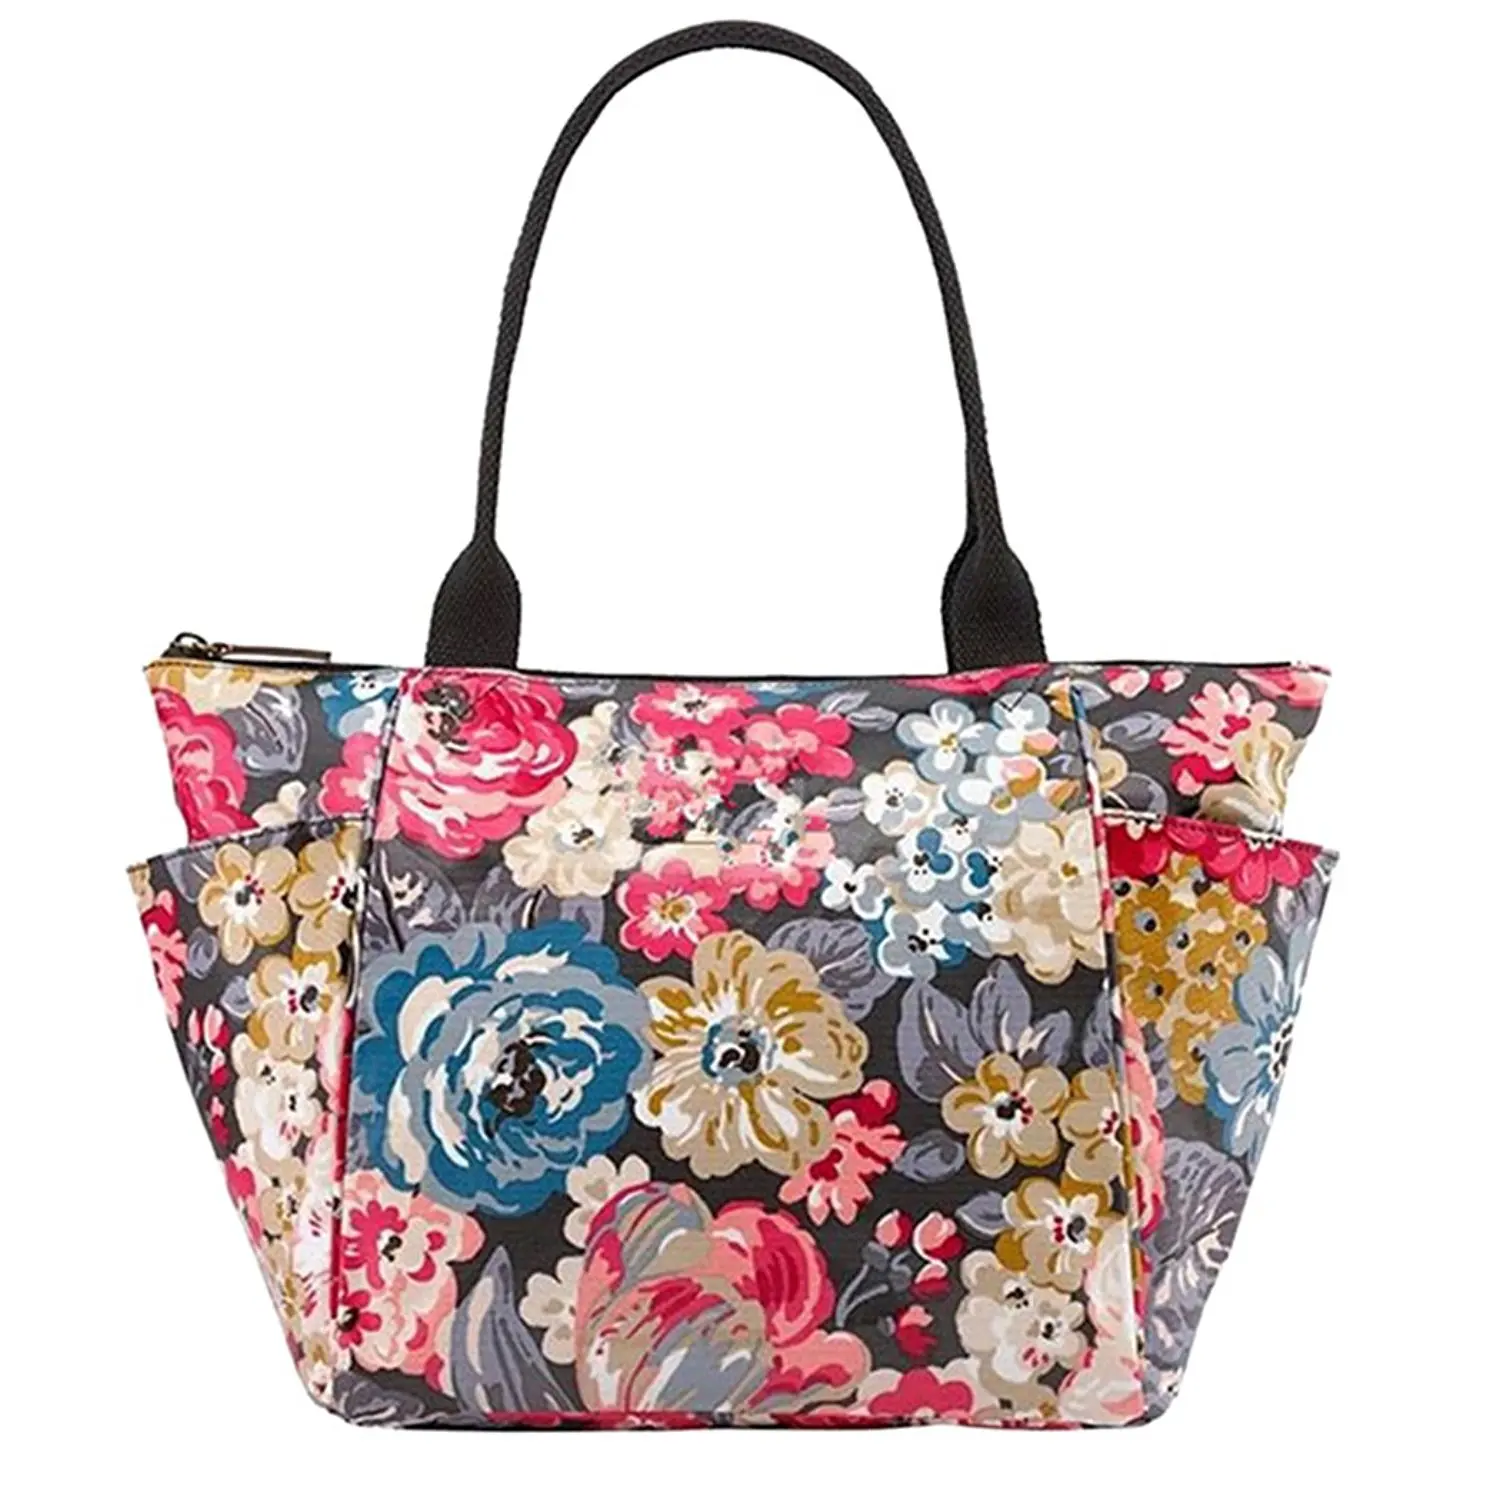 Cheap Floral Hobo Bag, find Floral Hobo Bag deals on line at Alibaba.com